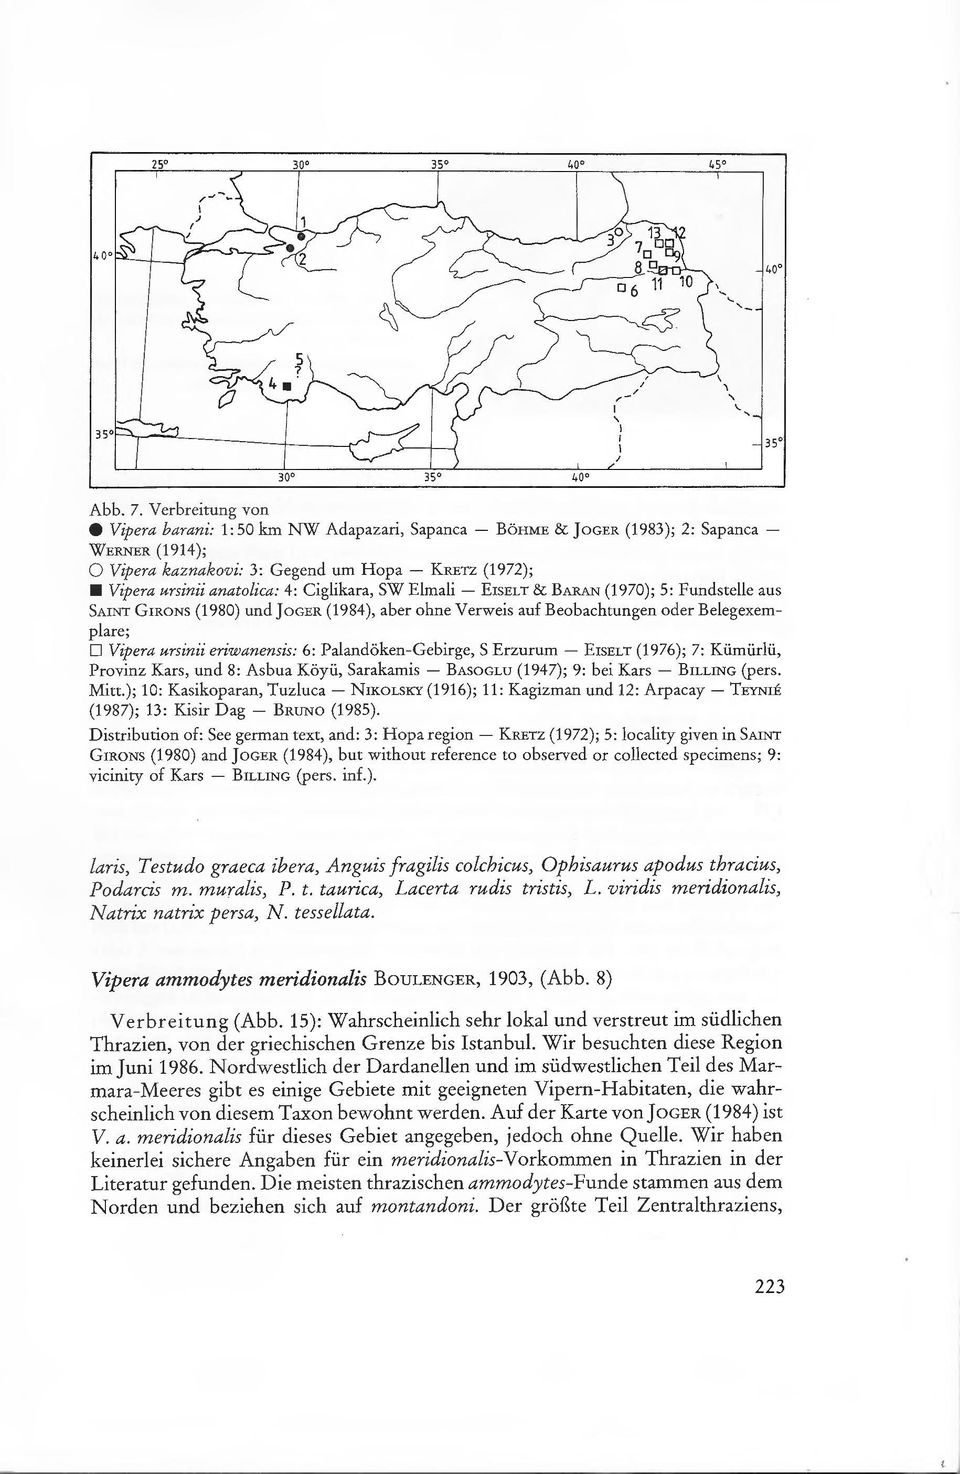 Ciglikara, SW Elmali - ErsELT & BARAN (1970); 5: Fundstelle aus SAINT GrRONS (1980) und JoGER (1984), aber ohne Verweis auf Beobachtungen oder Belegexemplare; D Vipera ursinii eriwanensis: 6: